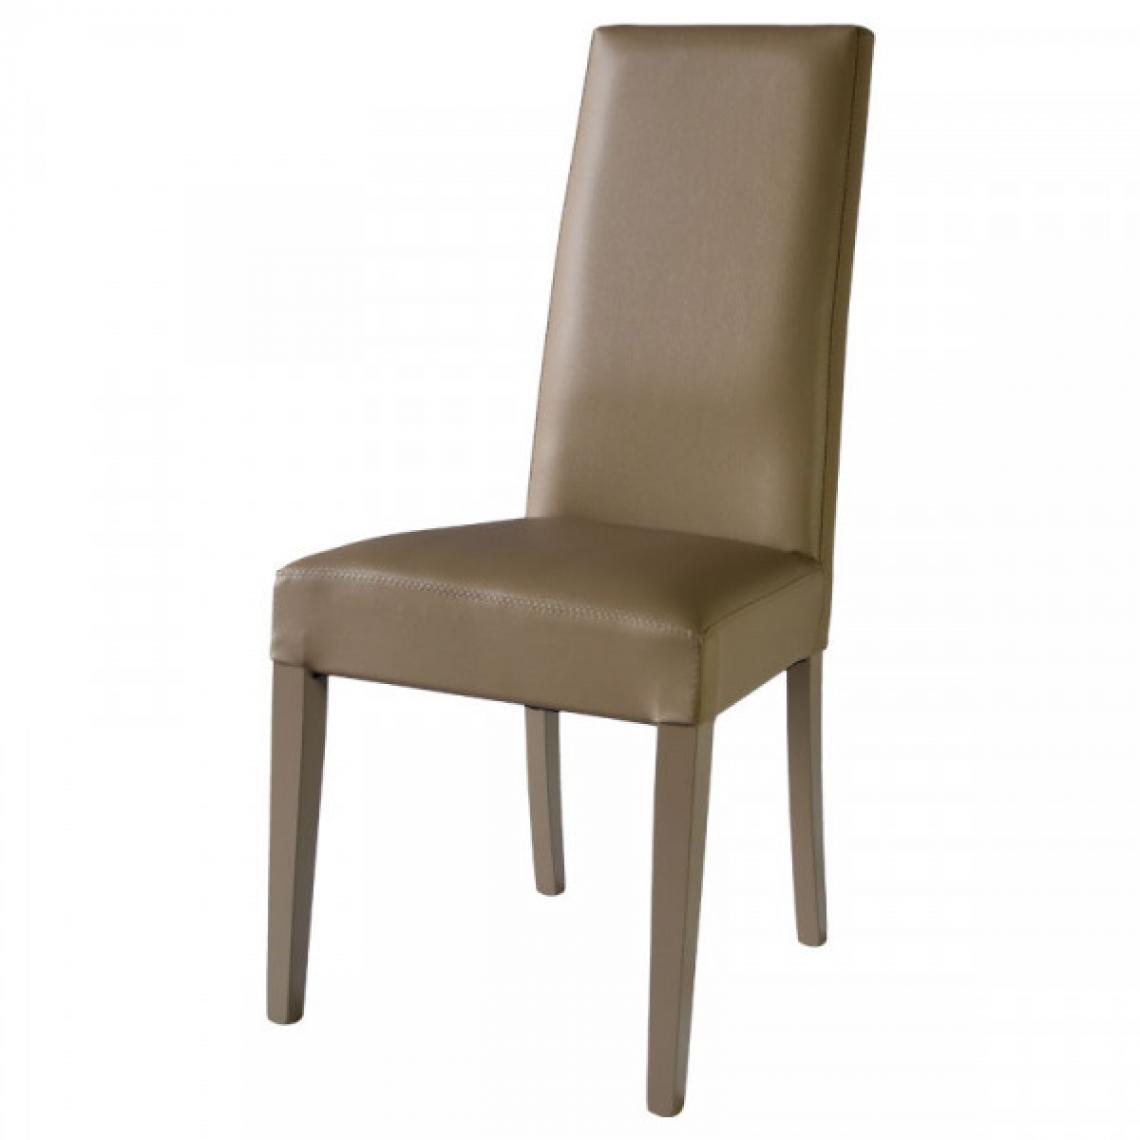 Dansmamaison - Duo de chaises en similicuir Taupe - VENISE - L 54 x l 46 x H 99 cm - Chaises